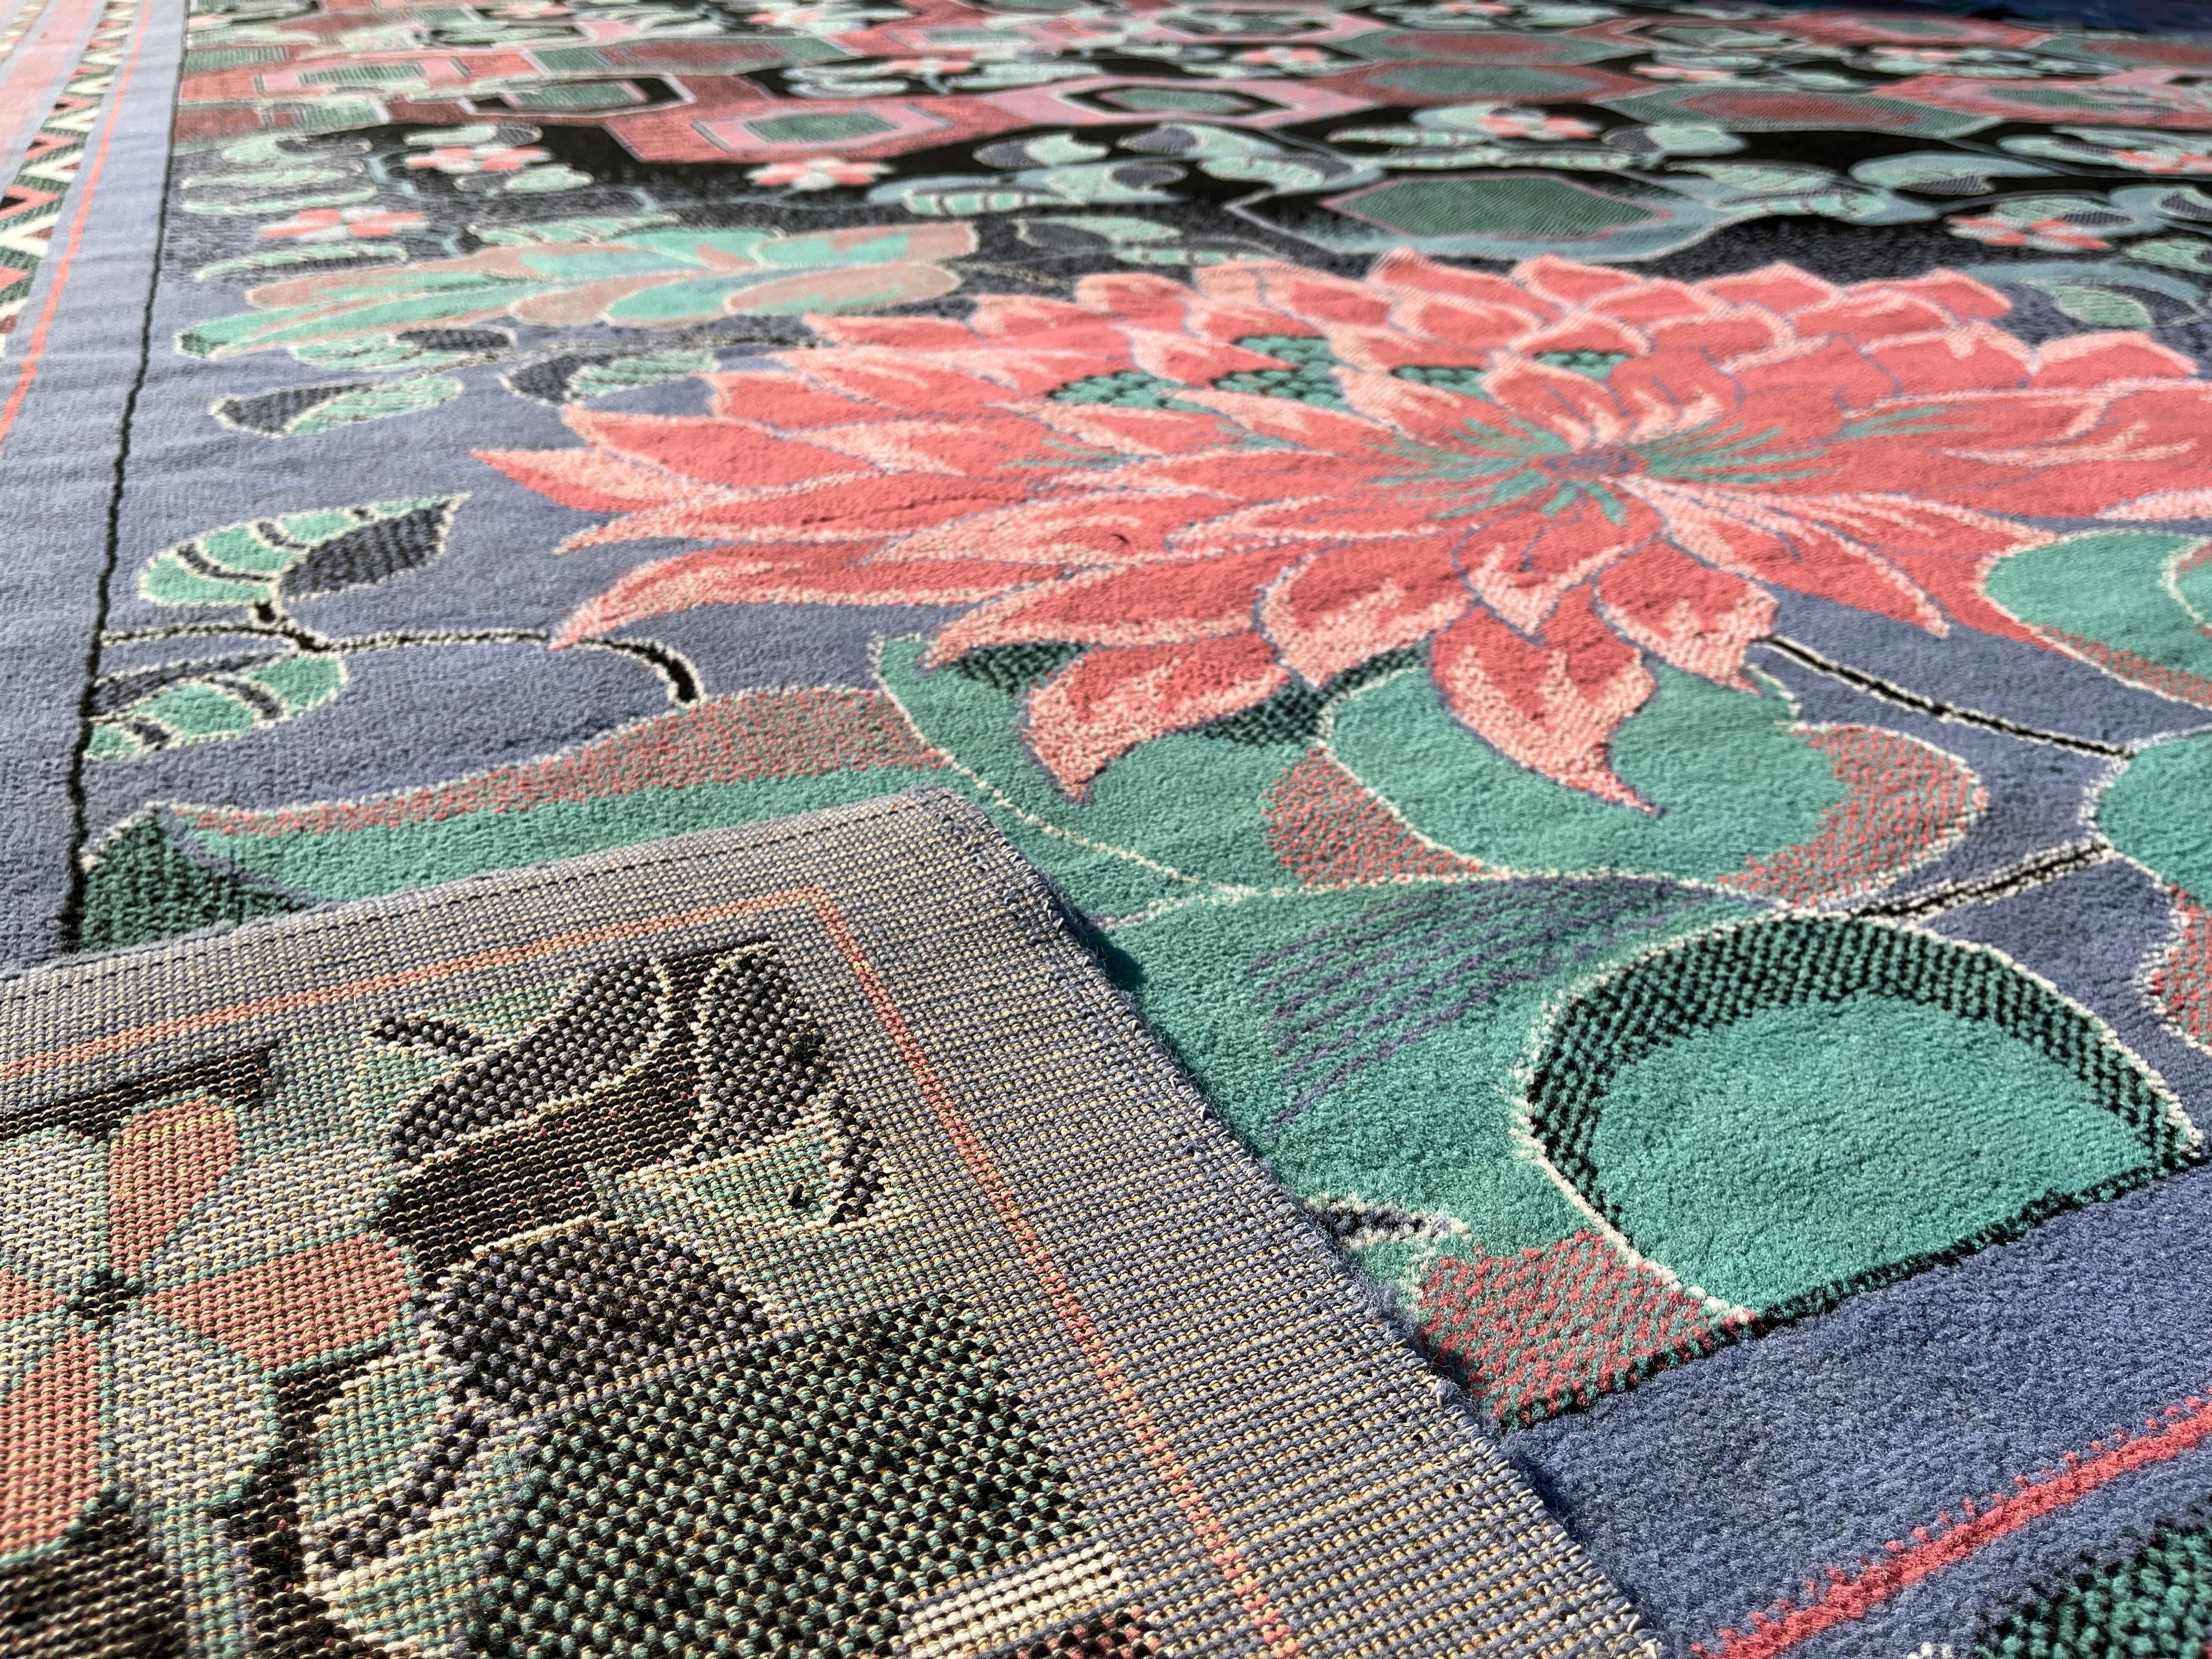 Zeitloser synthetischer Teppich, inspiriert vom berühmten Künstler William Morris